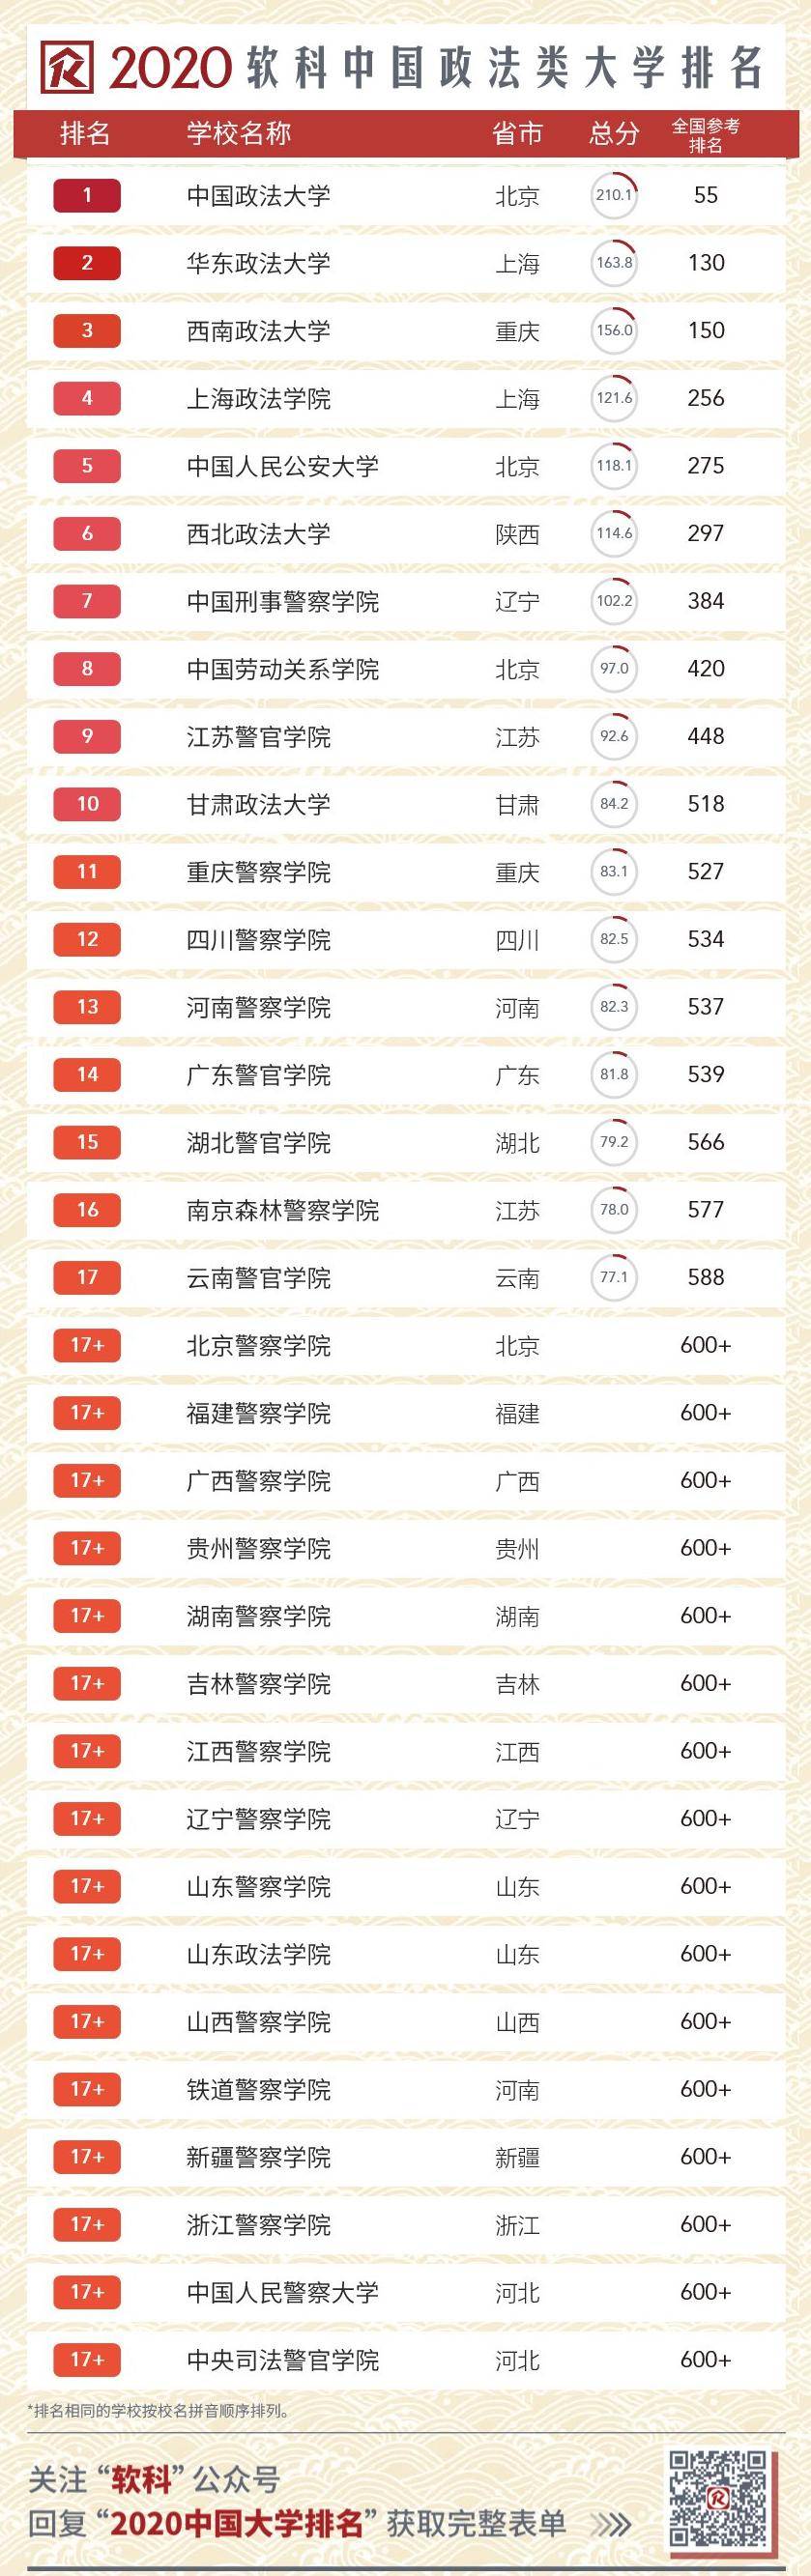 2020香港所有大学排名_2020香港高校排名,港大第一,港中文第二